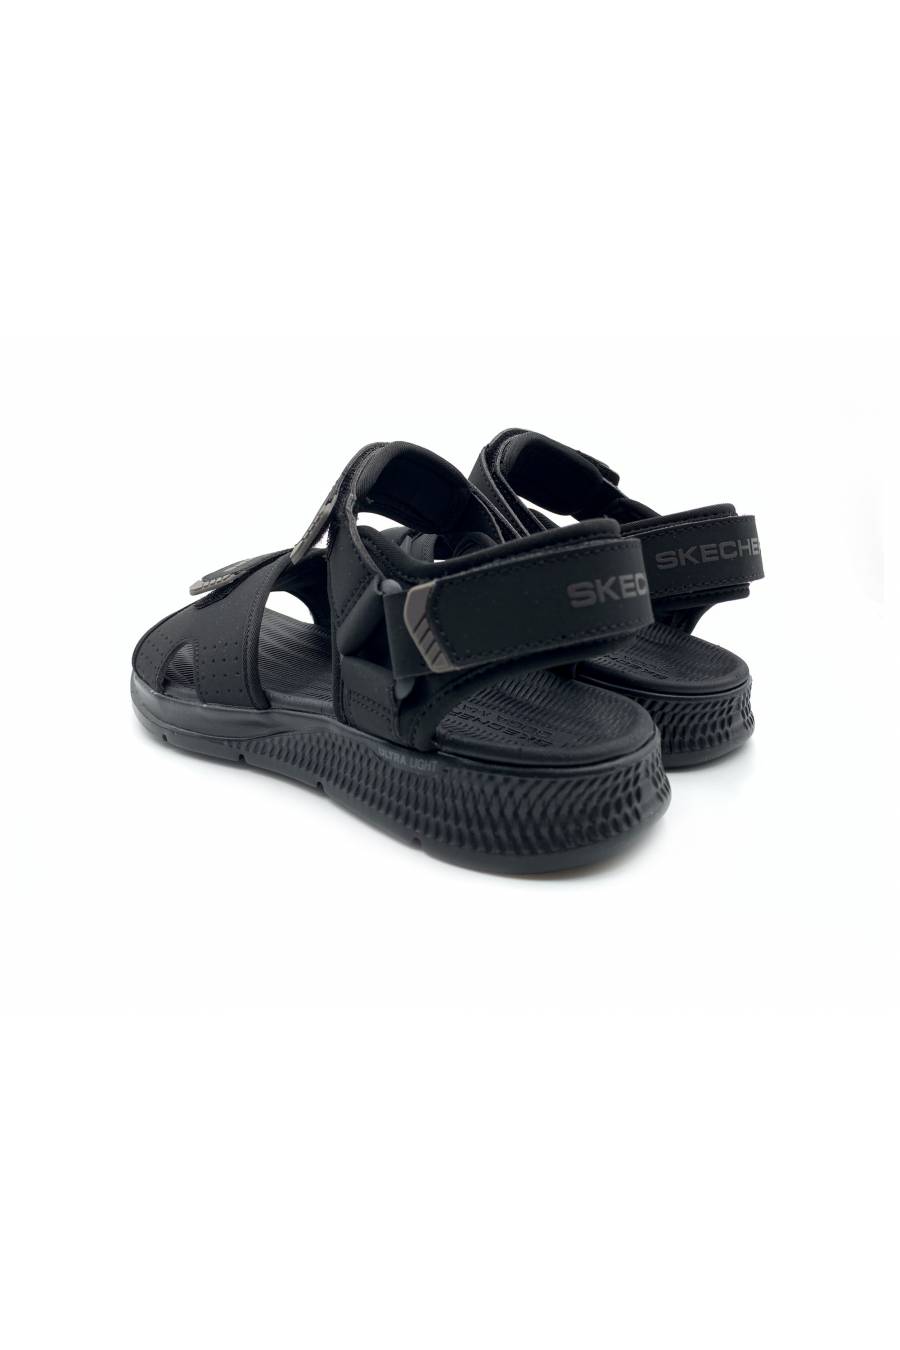 Sandalias Skechers GO Consistent Sandal – Tributary 229097-BBK